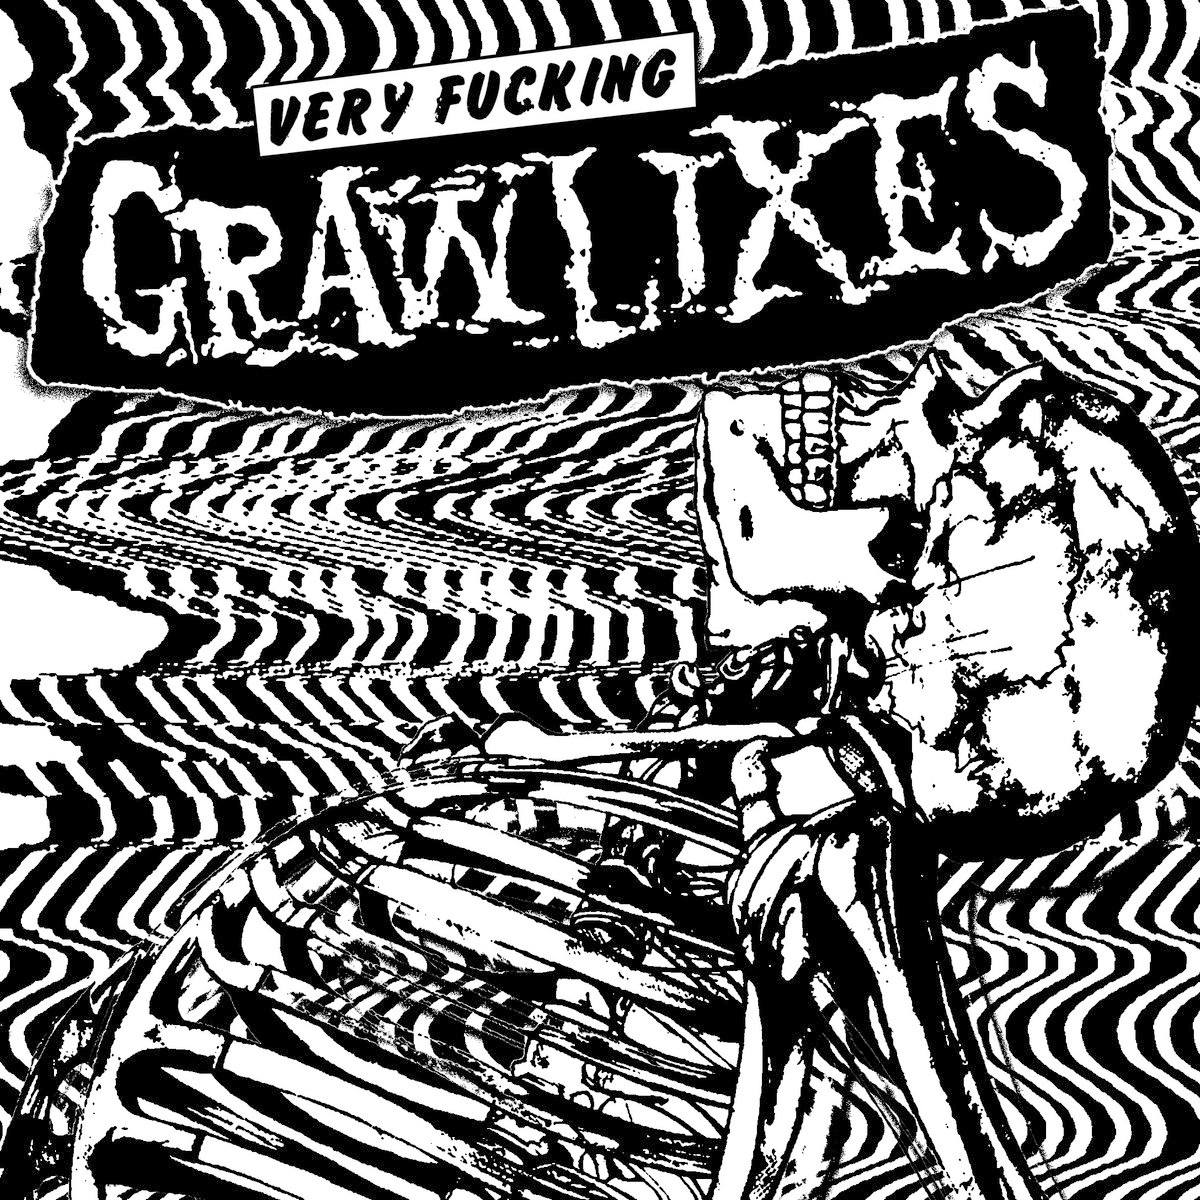 Grawlixes- Very Fucking Grawlixes 7" ~GAI!